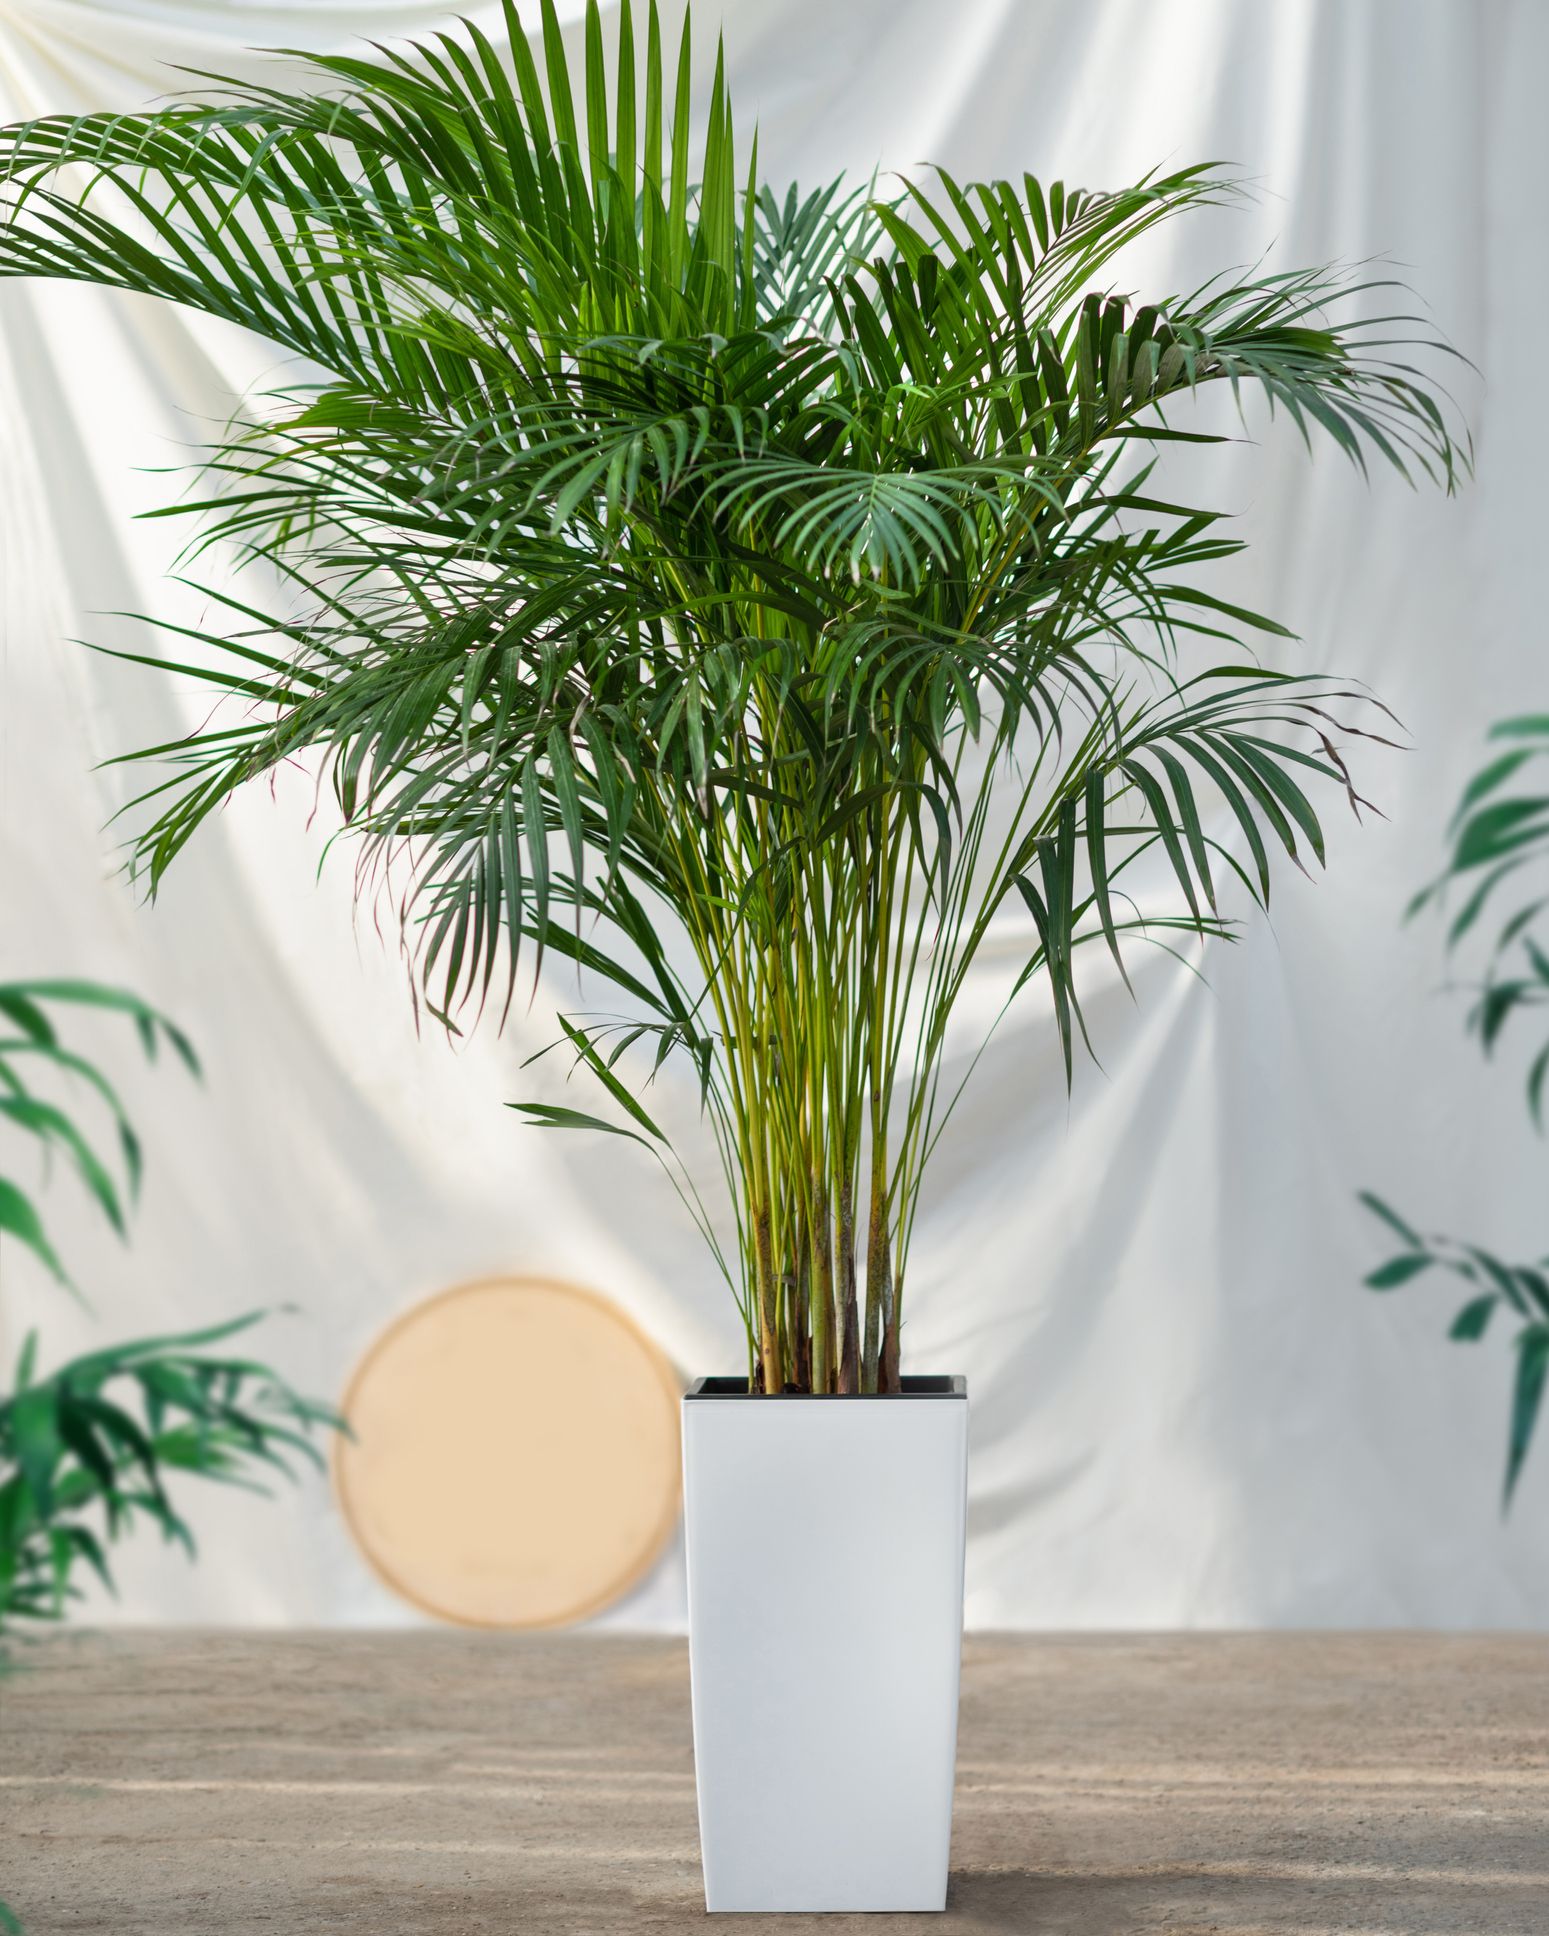 profiel Maakte zich klaar Pelgrim Indoor Palm Plants Care Tips - Types of Indoor Palm Plants